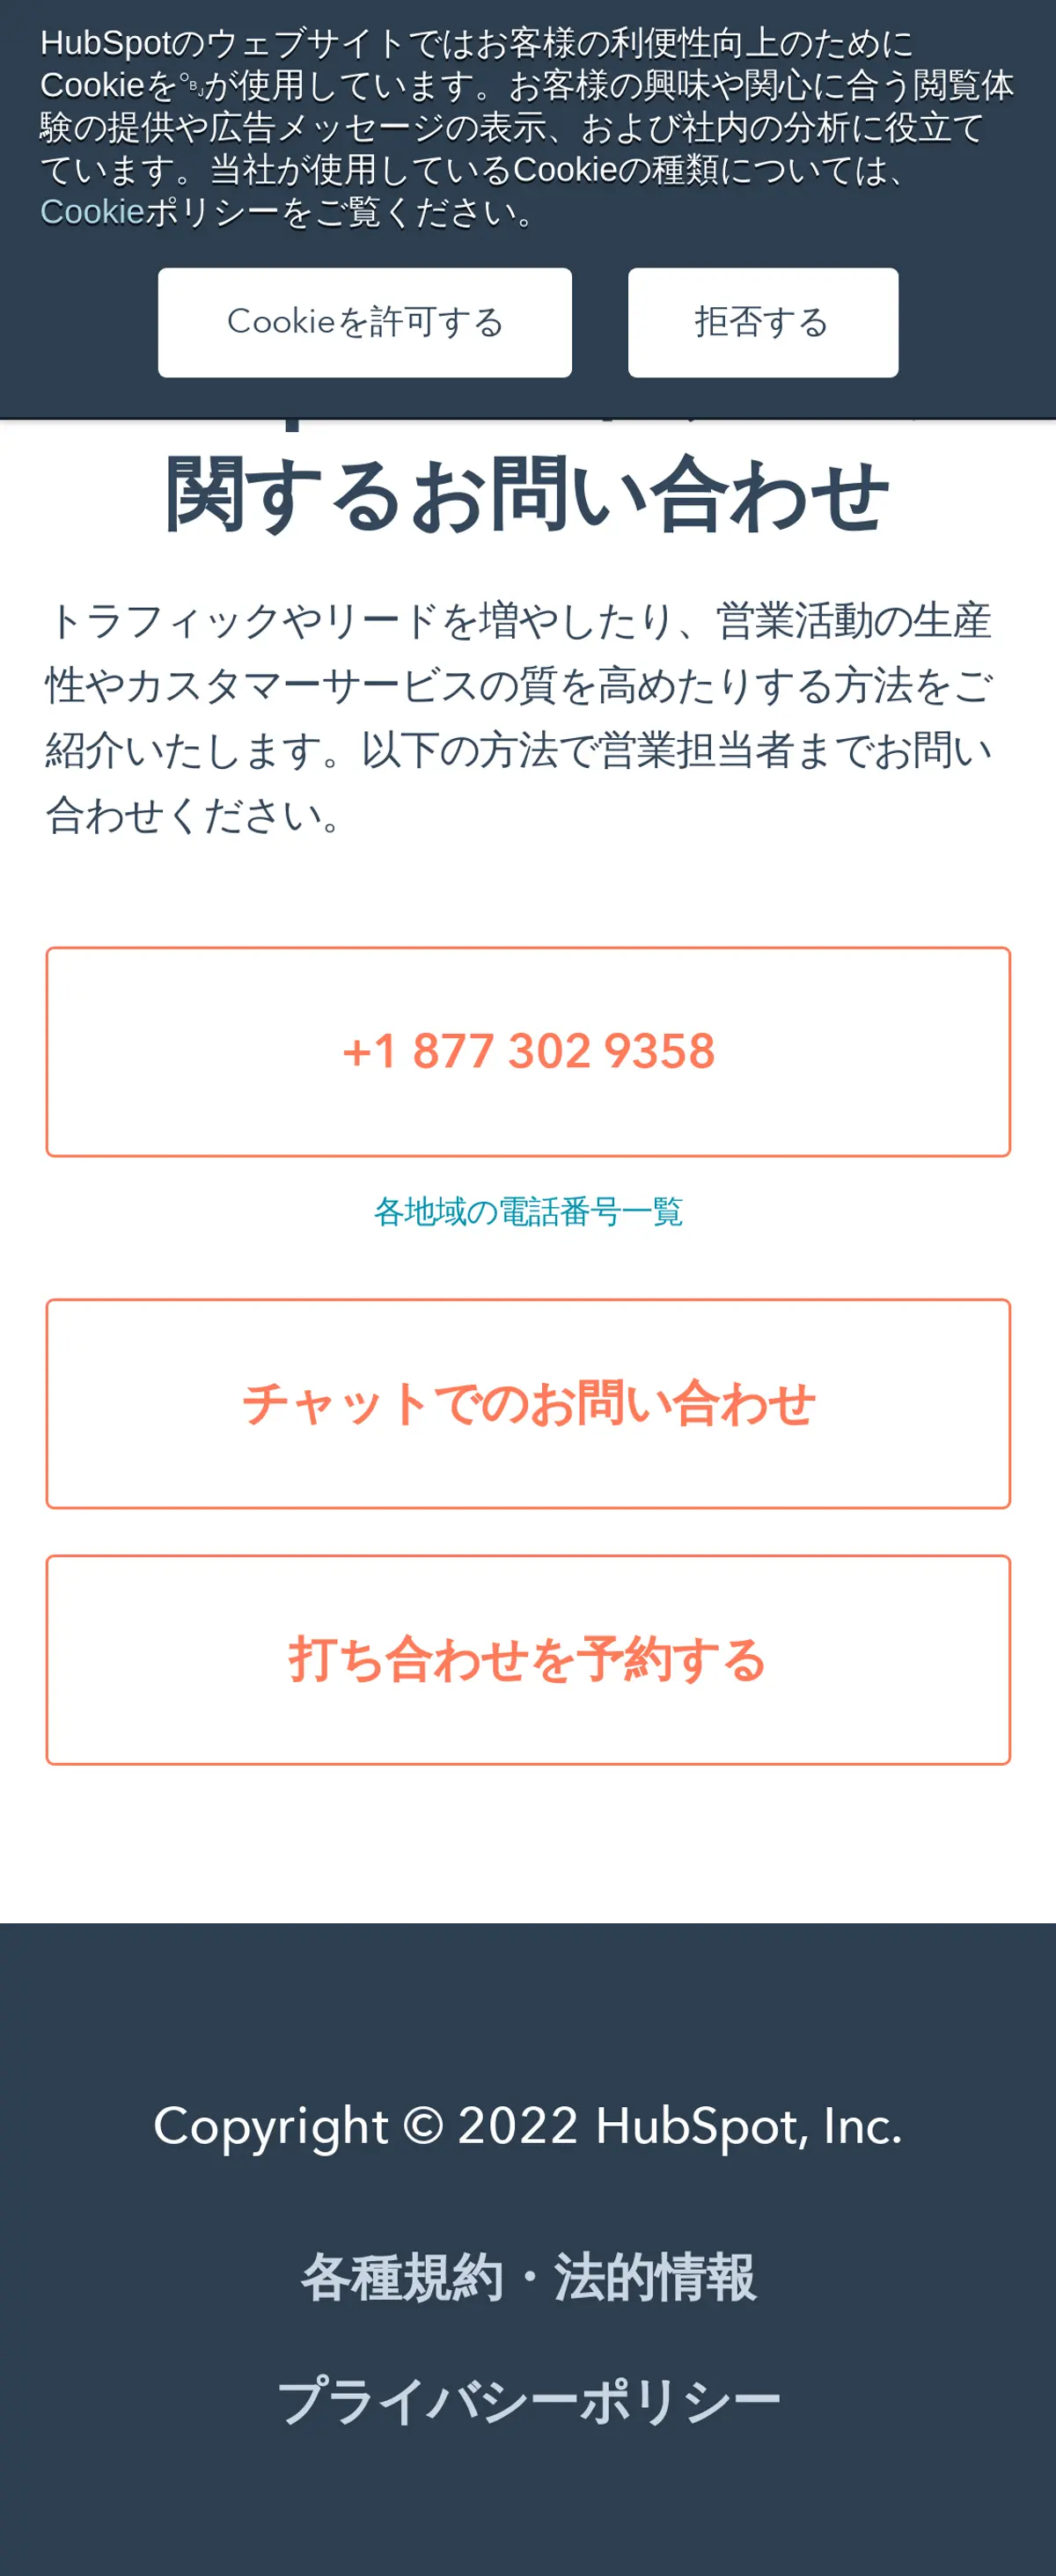 キャプチャ画面 会社名:HubSpot Japan株式会社プロジェクト名:Hubspot 画面名:問い合わせフォーム デバイス名:SPカテゴリ:WEB・インターネットタグ:SP,問い合わせフォーム